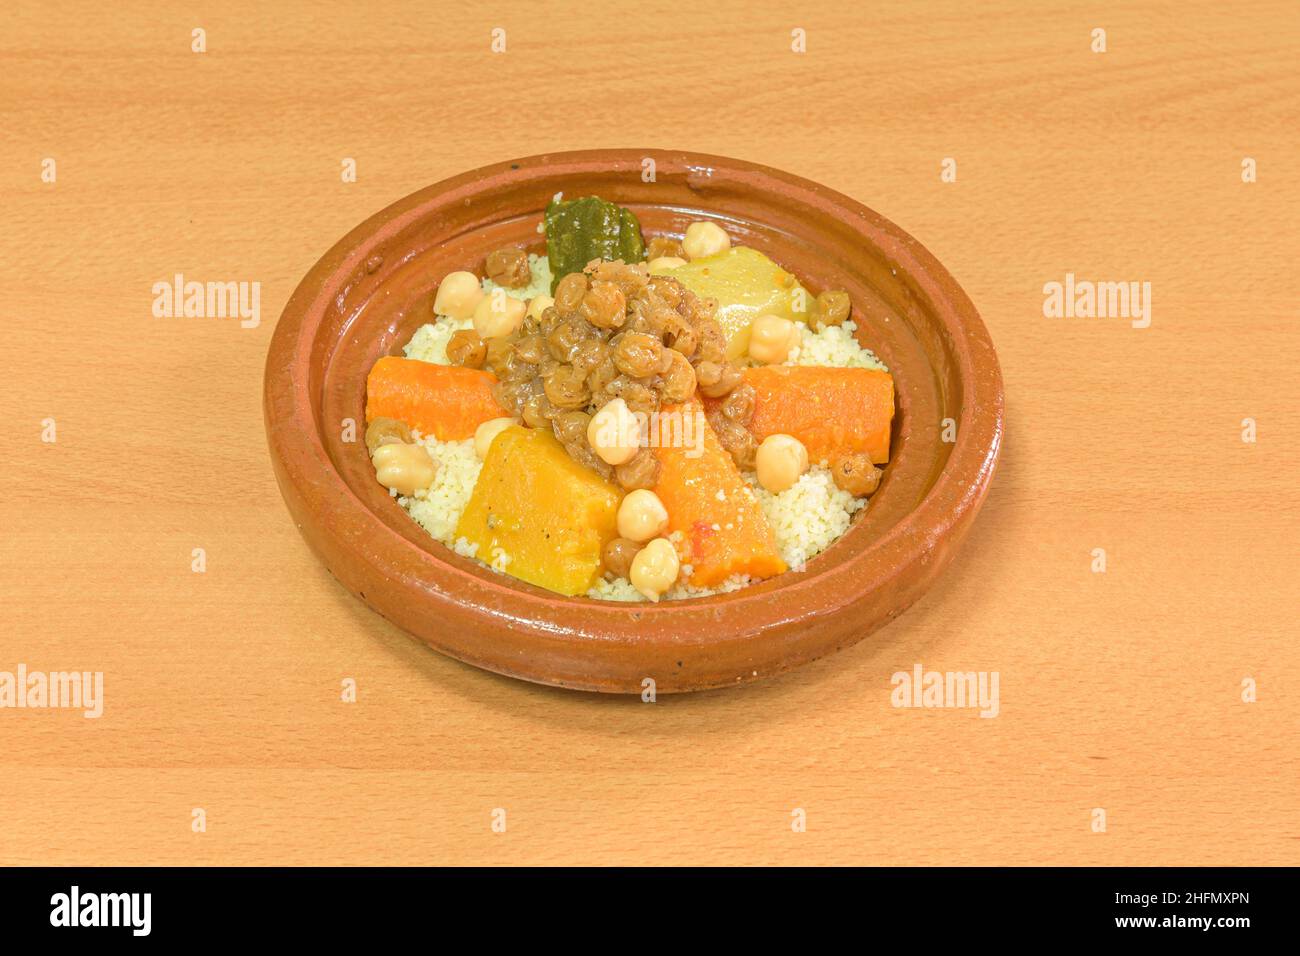 Le couscous est un aliment composé de grains de semoule de blé dur de taille moyenne d'un millimètre de diamètre Banque D'Images